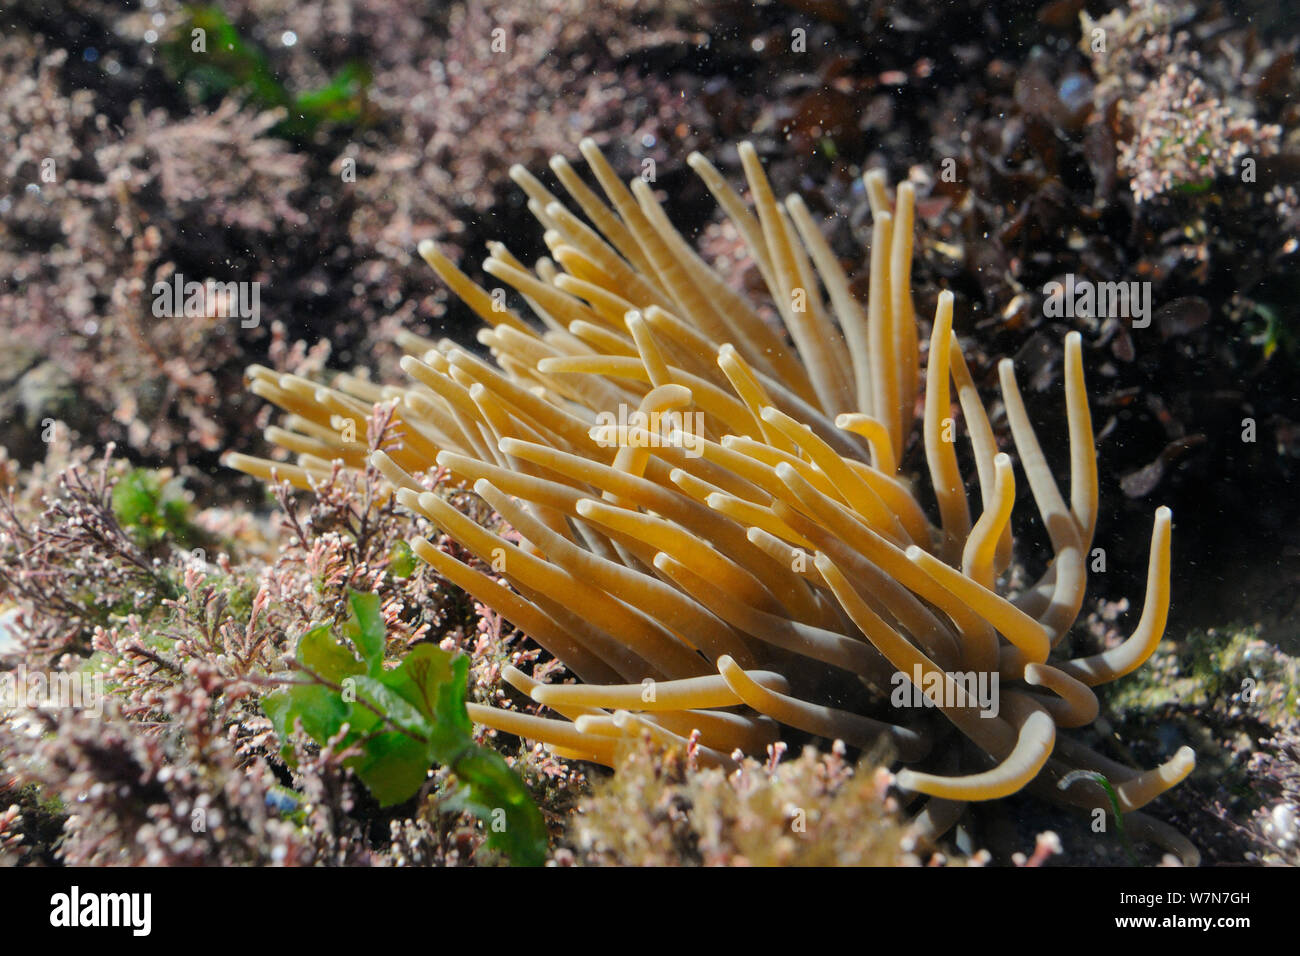 In der Nähe von Snakelocks Anemone (Anemonia viridis) unter Coralweed (Corallina officinalis) Filter Fütterung in einem rockpool. Rhossili, die Halbinsel Gower, Juli. Stockfoto